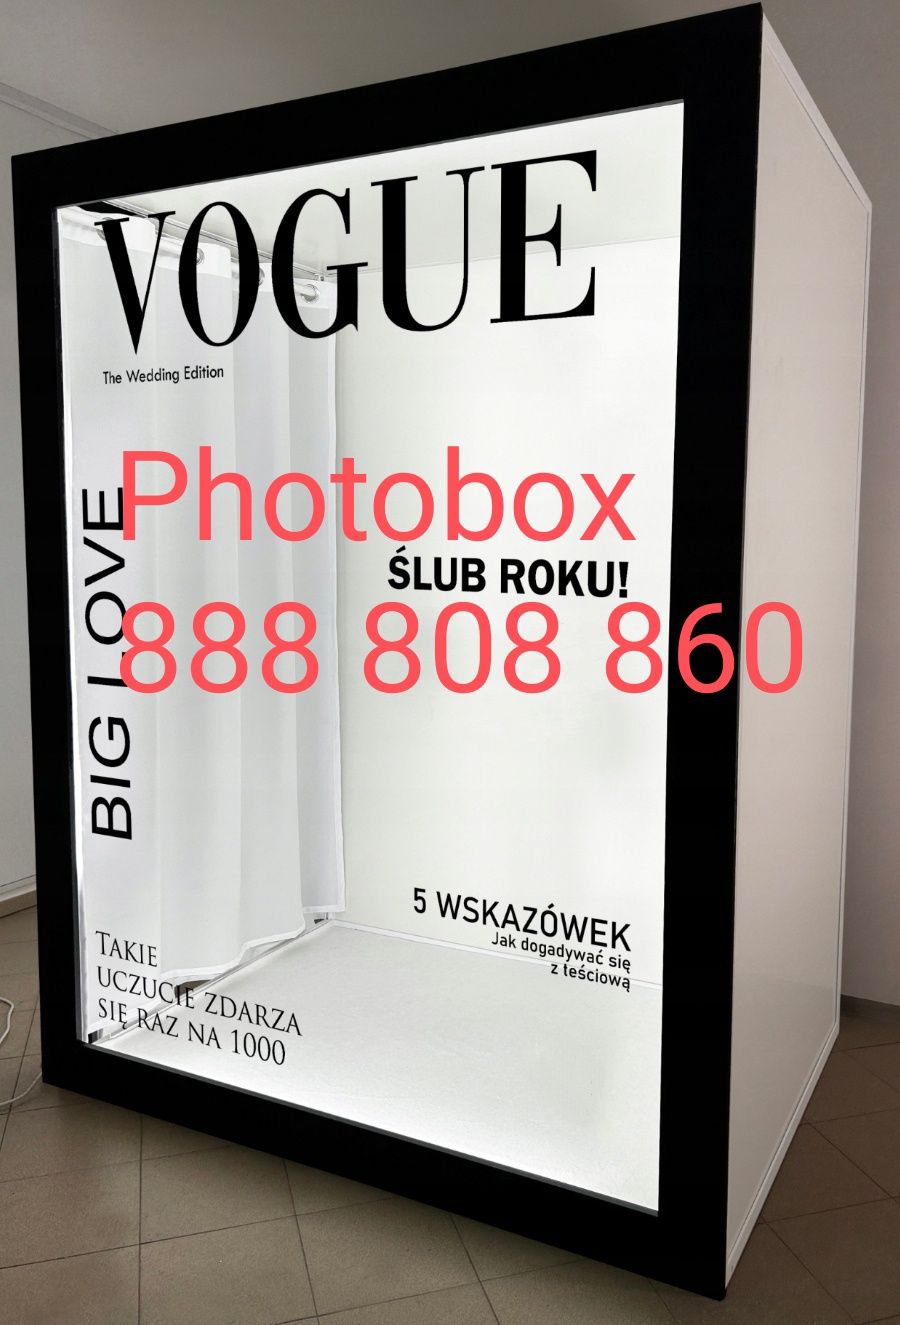 Photo box/Photobox/Wedding Magazine/Vogue/promocja 999zł/499 zł